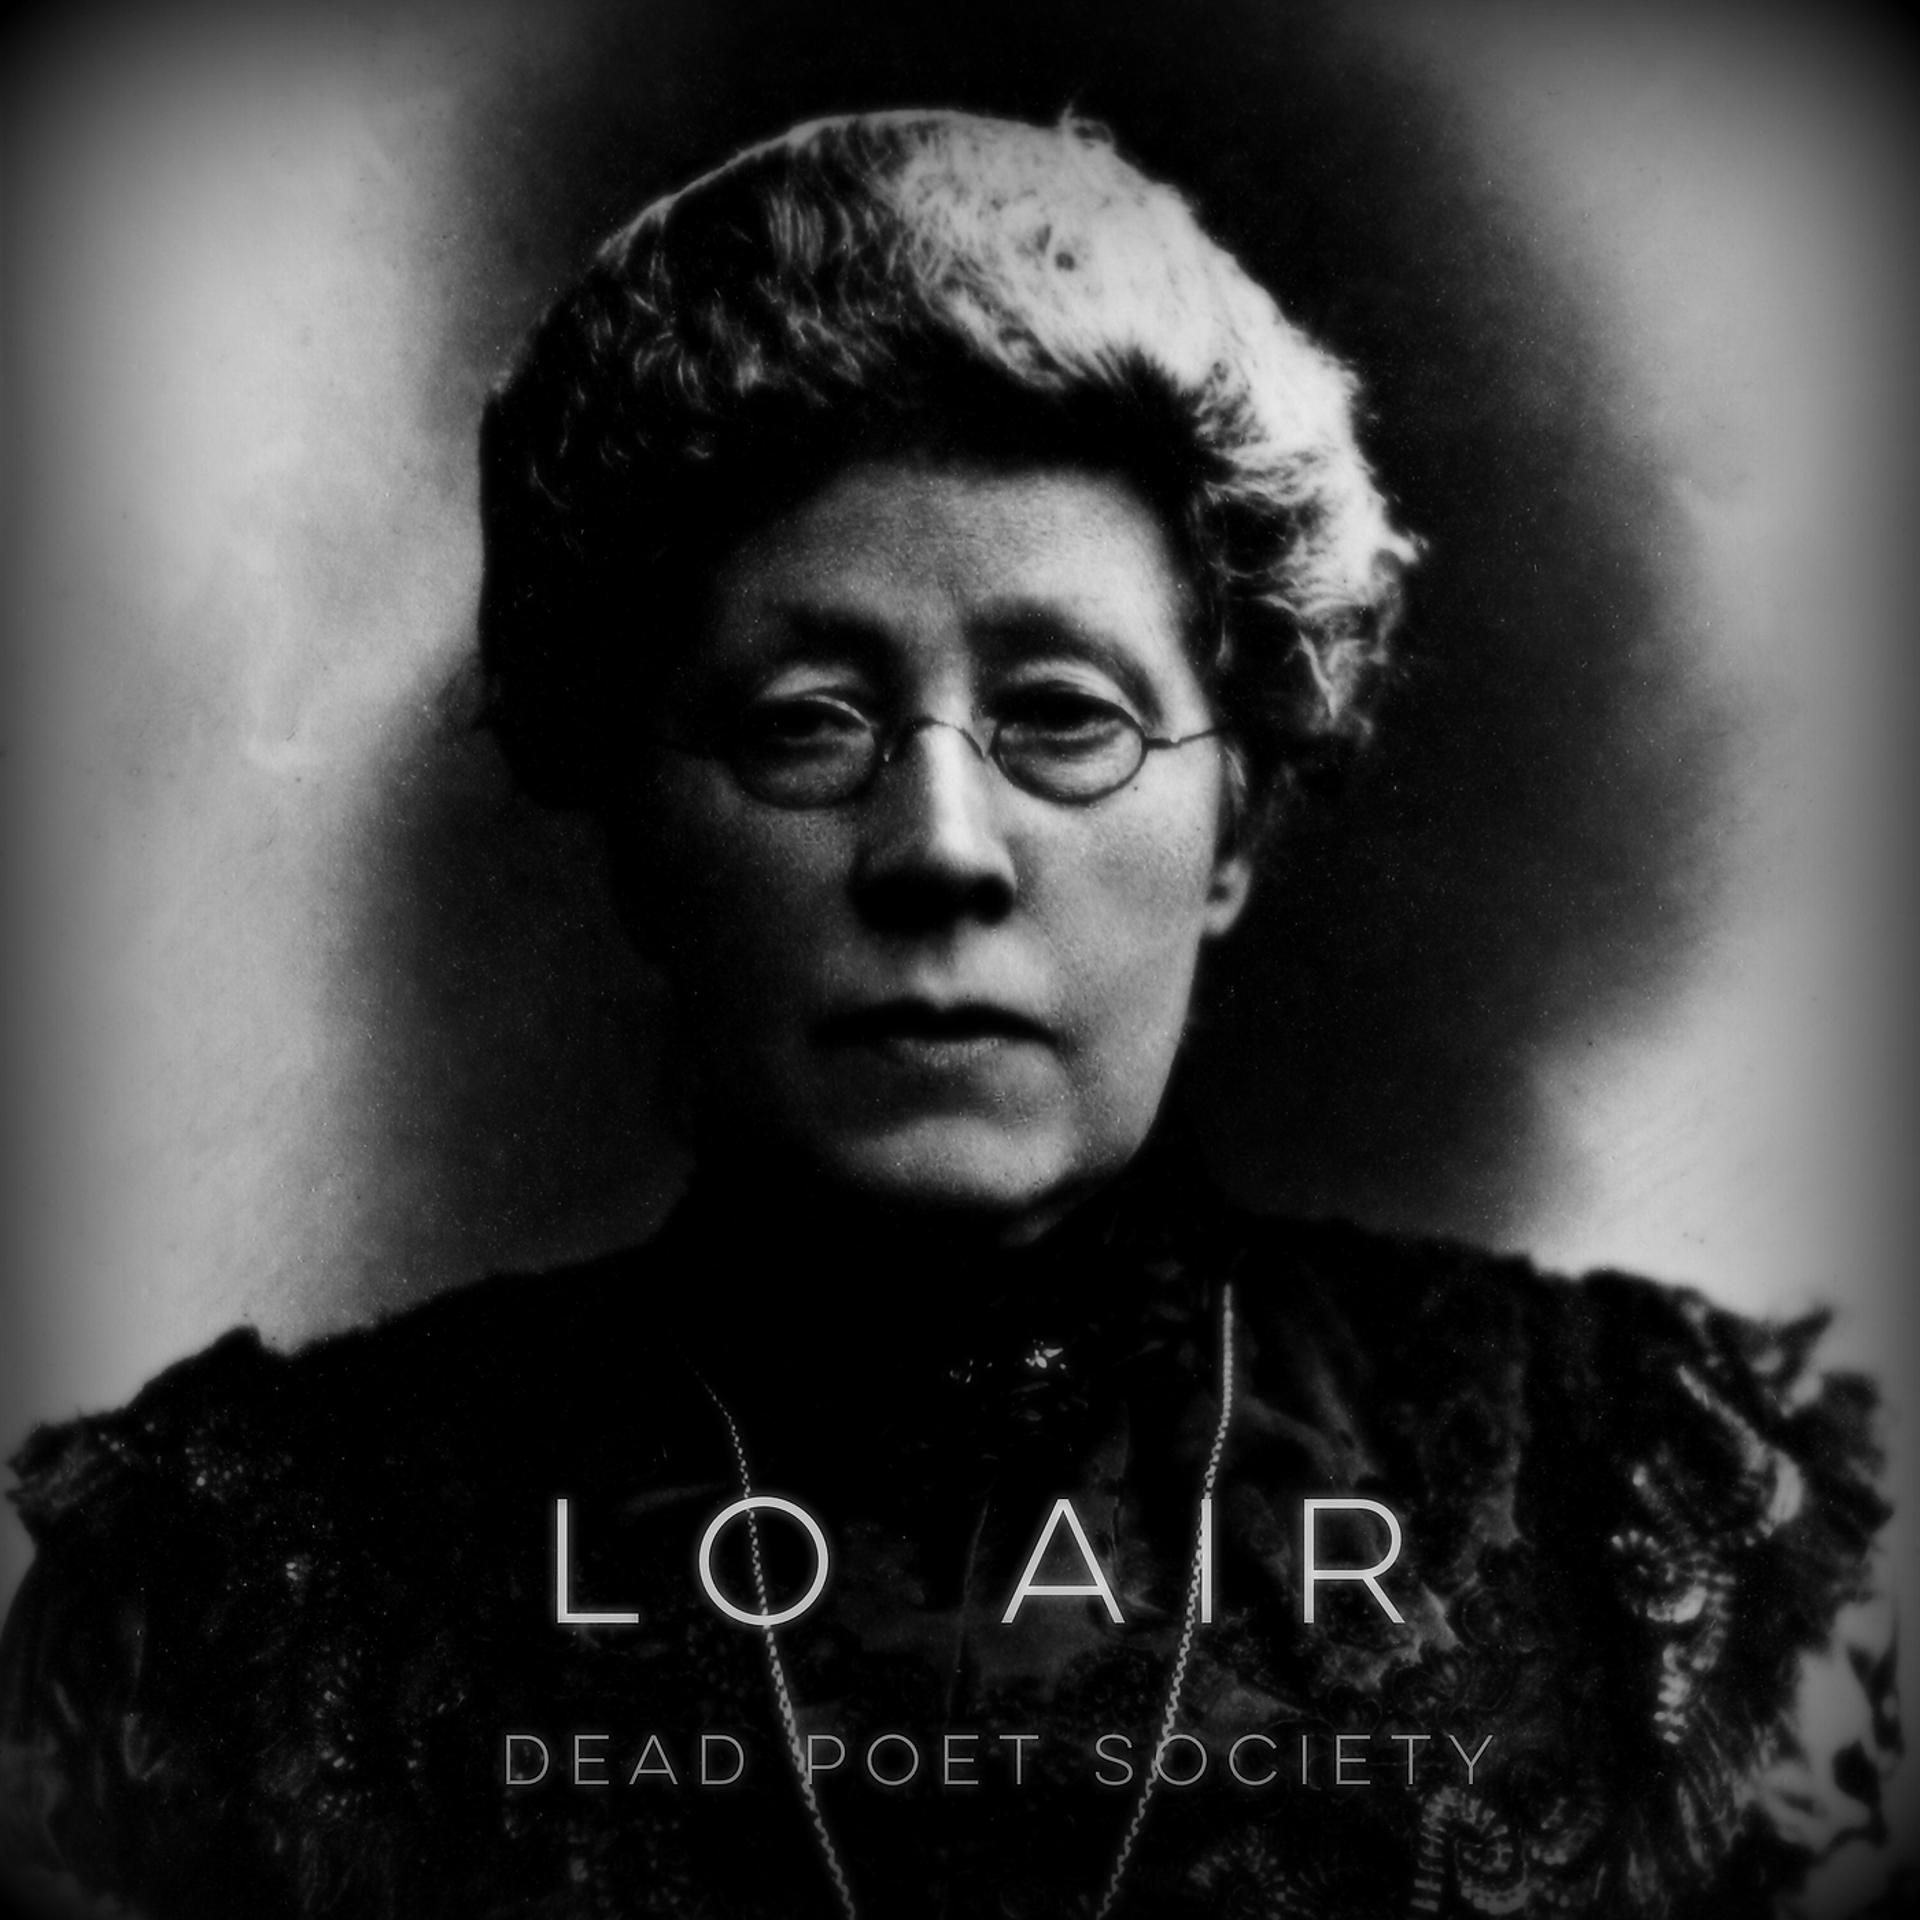 Poet society. Lo Air Dead poet. Dead poets группа. Lo Air биография. One Dead poet 01.